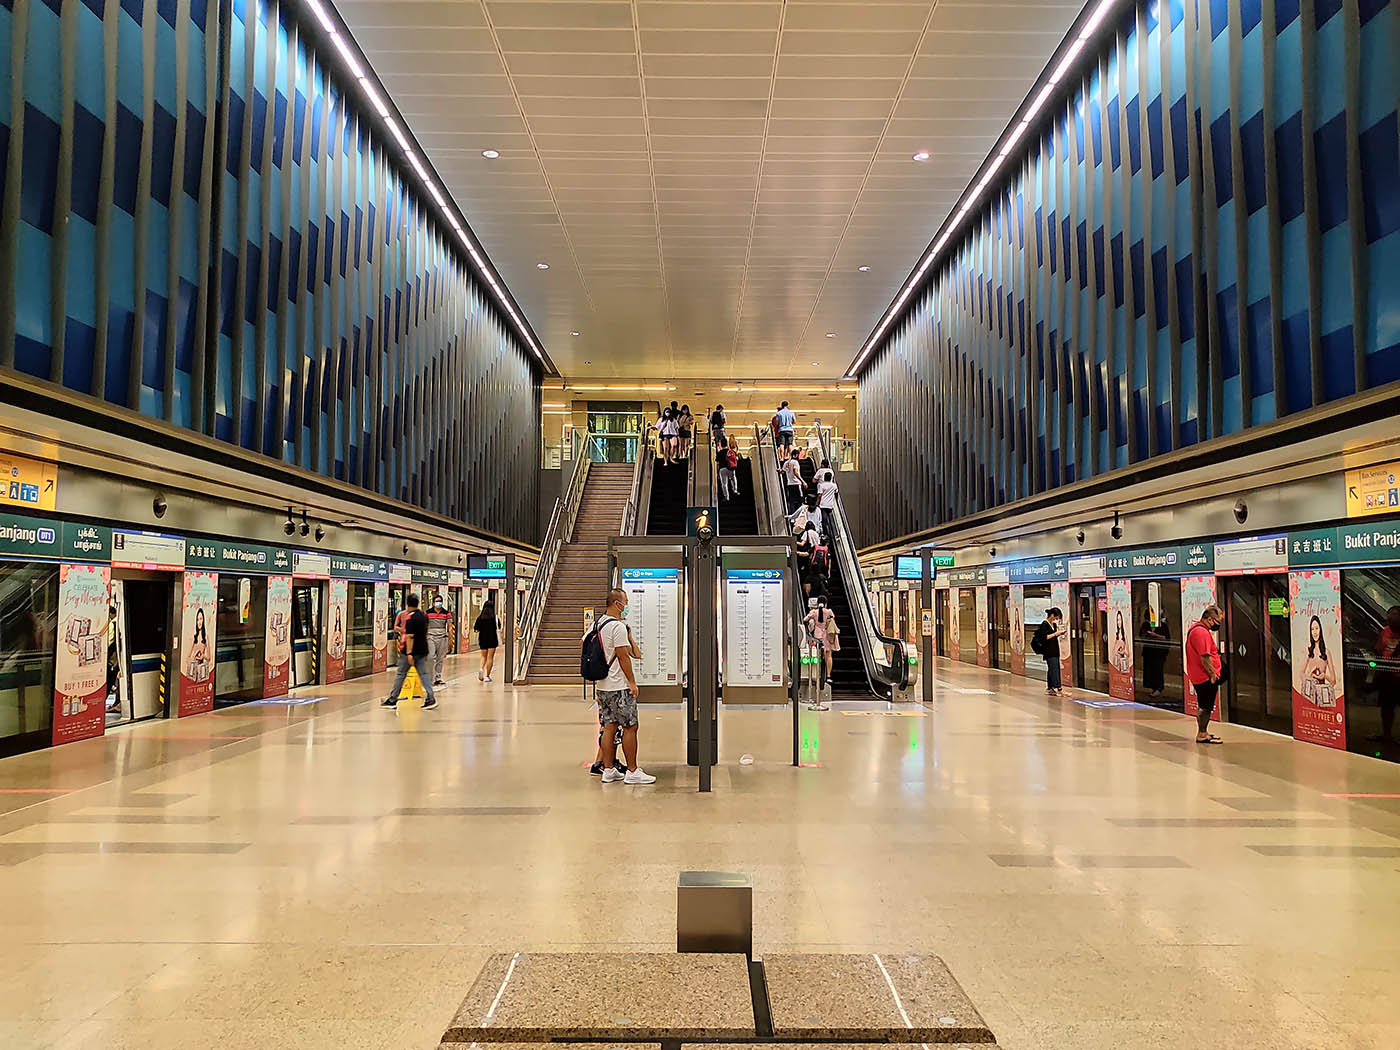 Bukit Panjang MRT Station - - DT1 Platforms